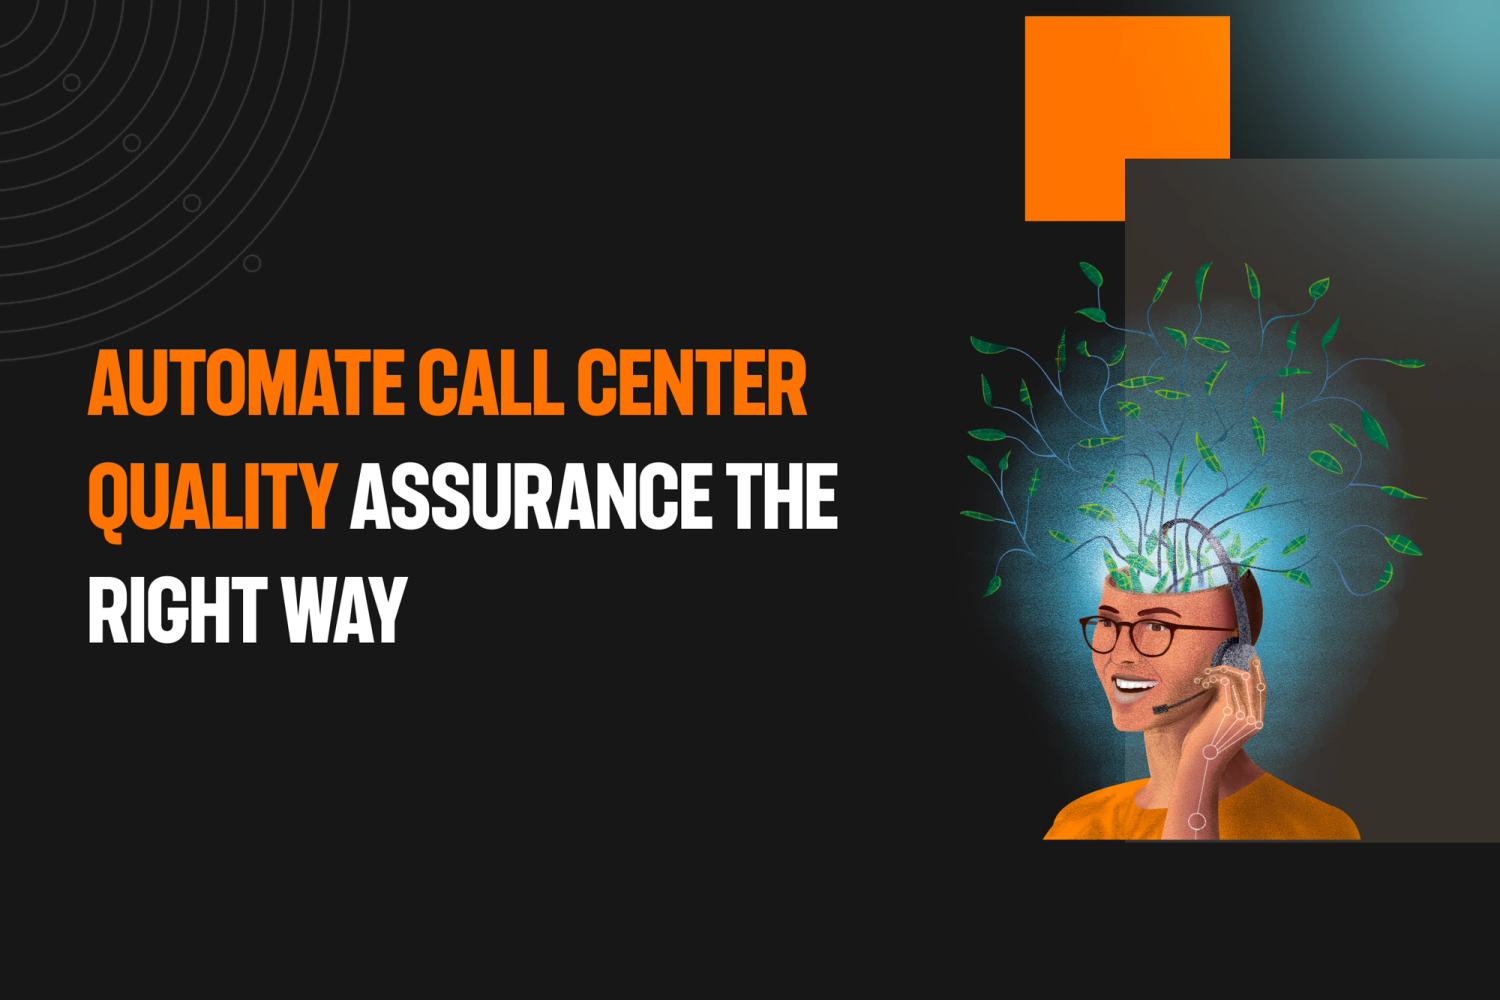 call center quality assurance, quality assurance, contact center quality assurance